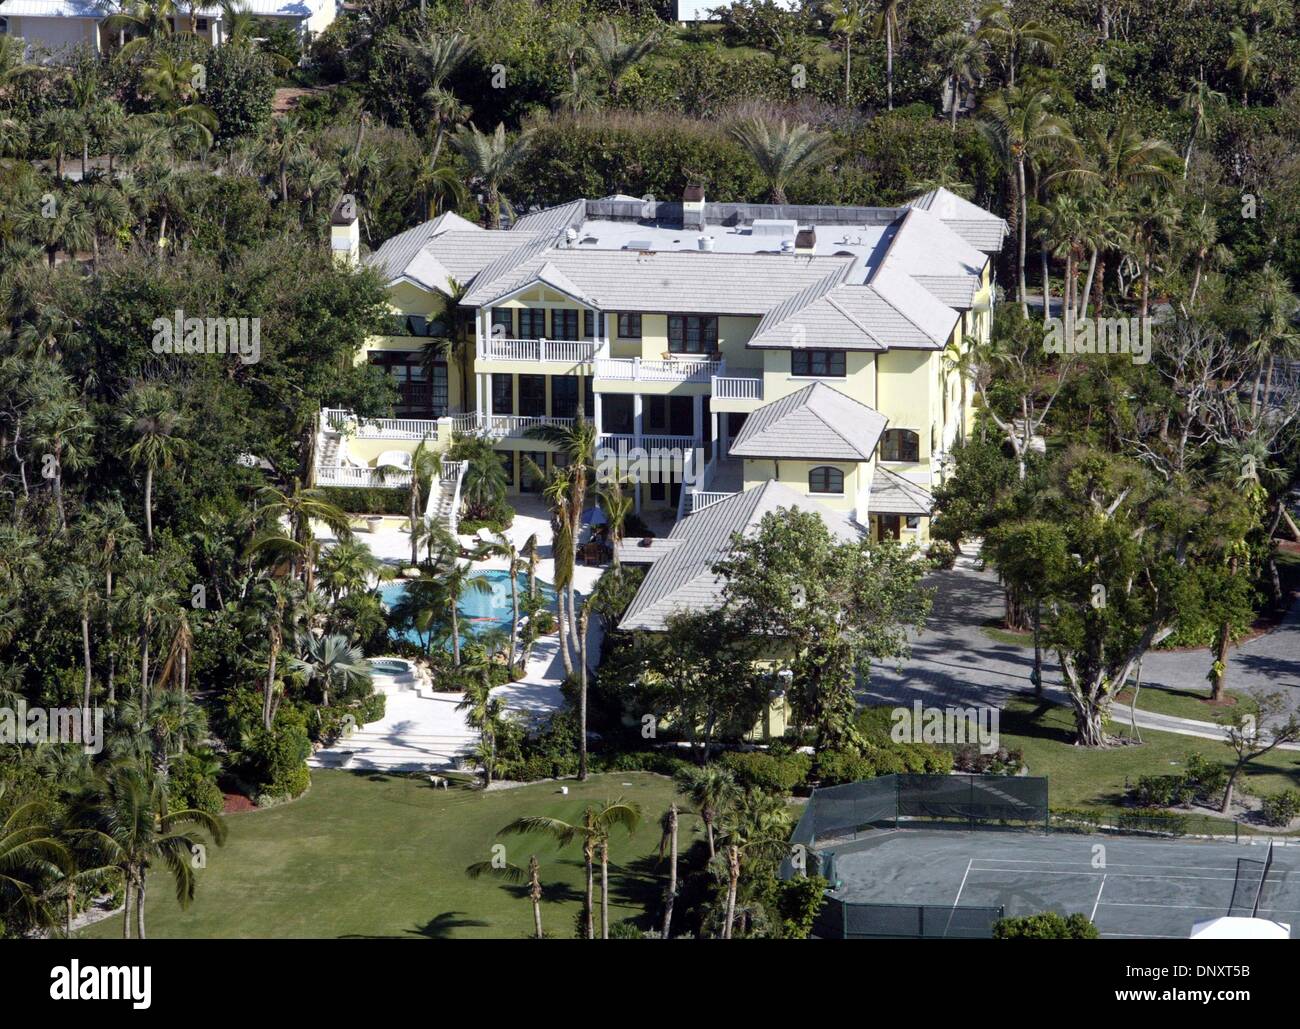 Dec 28, 2005 ; Jupiter Island, Floride, USA ; Tiger Woods aurait acheté l'ancienne Churck Curcio estate sur Jupiter Island. C'est 10 hectares qui vont de l'Intracoastal Waterway à l'océan. Il y a une maison jaune sur le côté de la propriété d'ICW, et un élégant yacht blanc de stabilisateurs attachés au quai au nord de la maison jaune. Il y a 4 maisons sur la propriété : 2 à t Banque D'Images